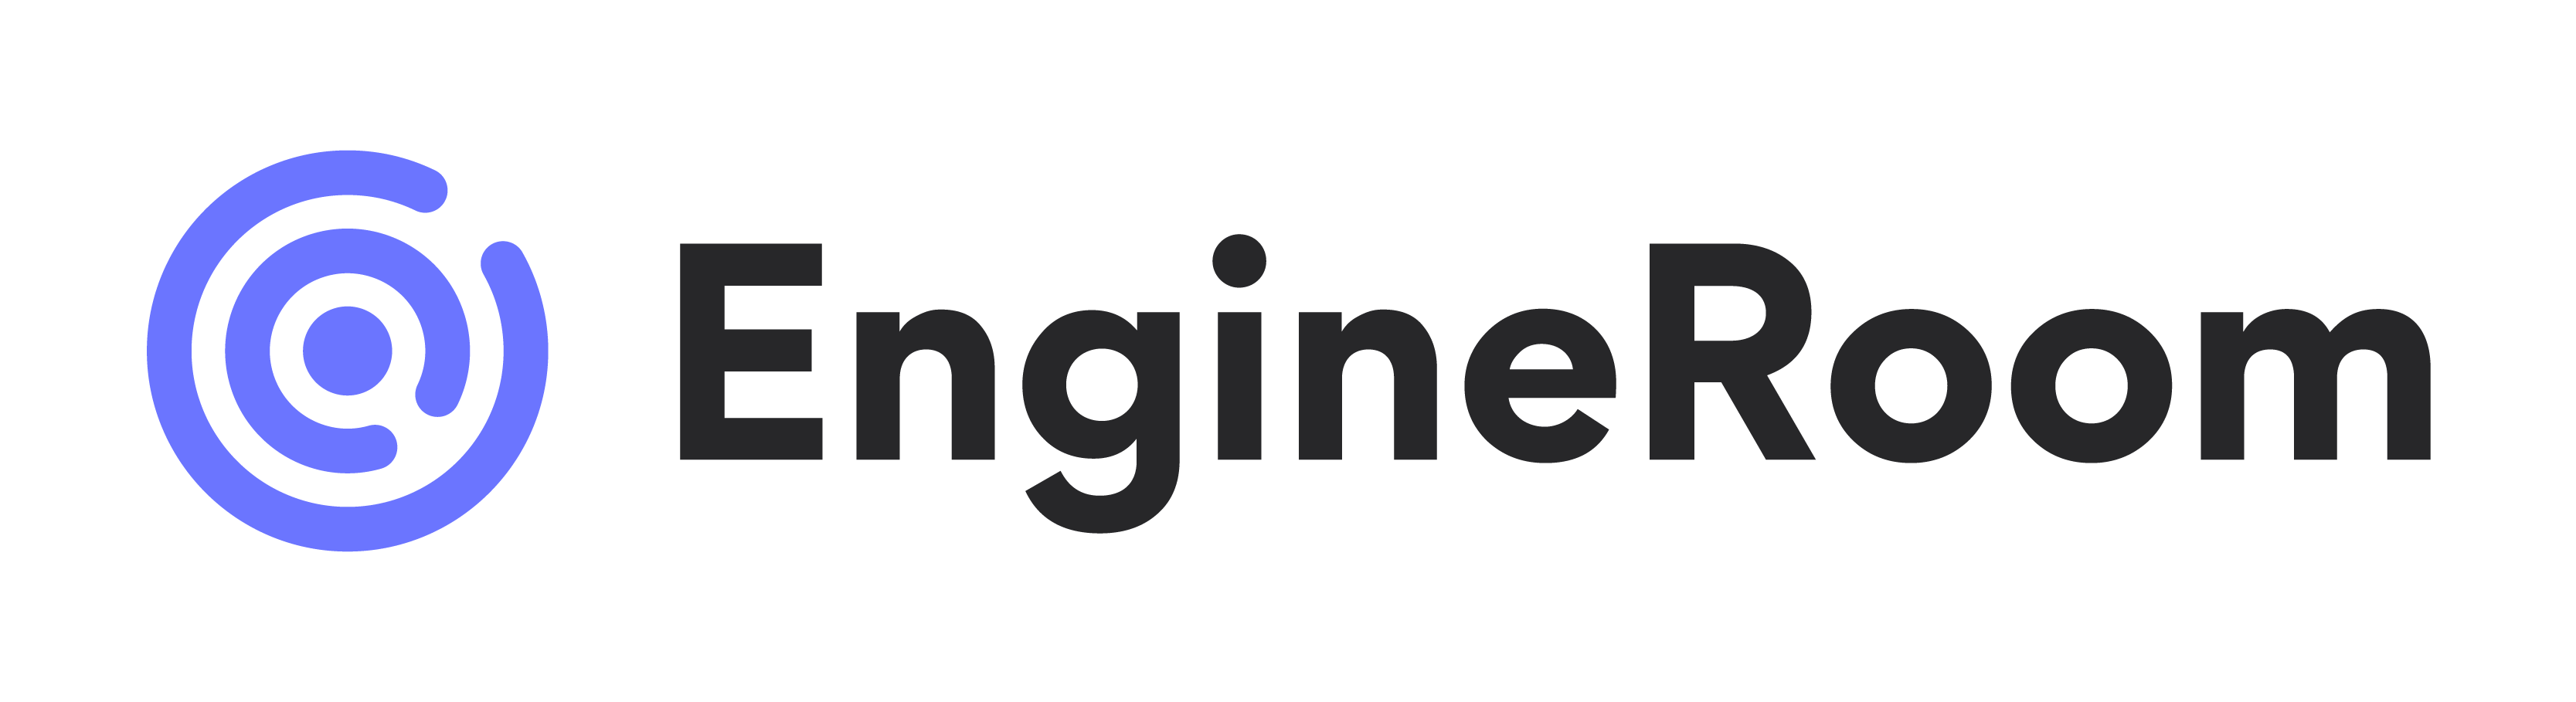 EngineRoom-Logo_Black-01-01.png